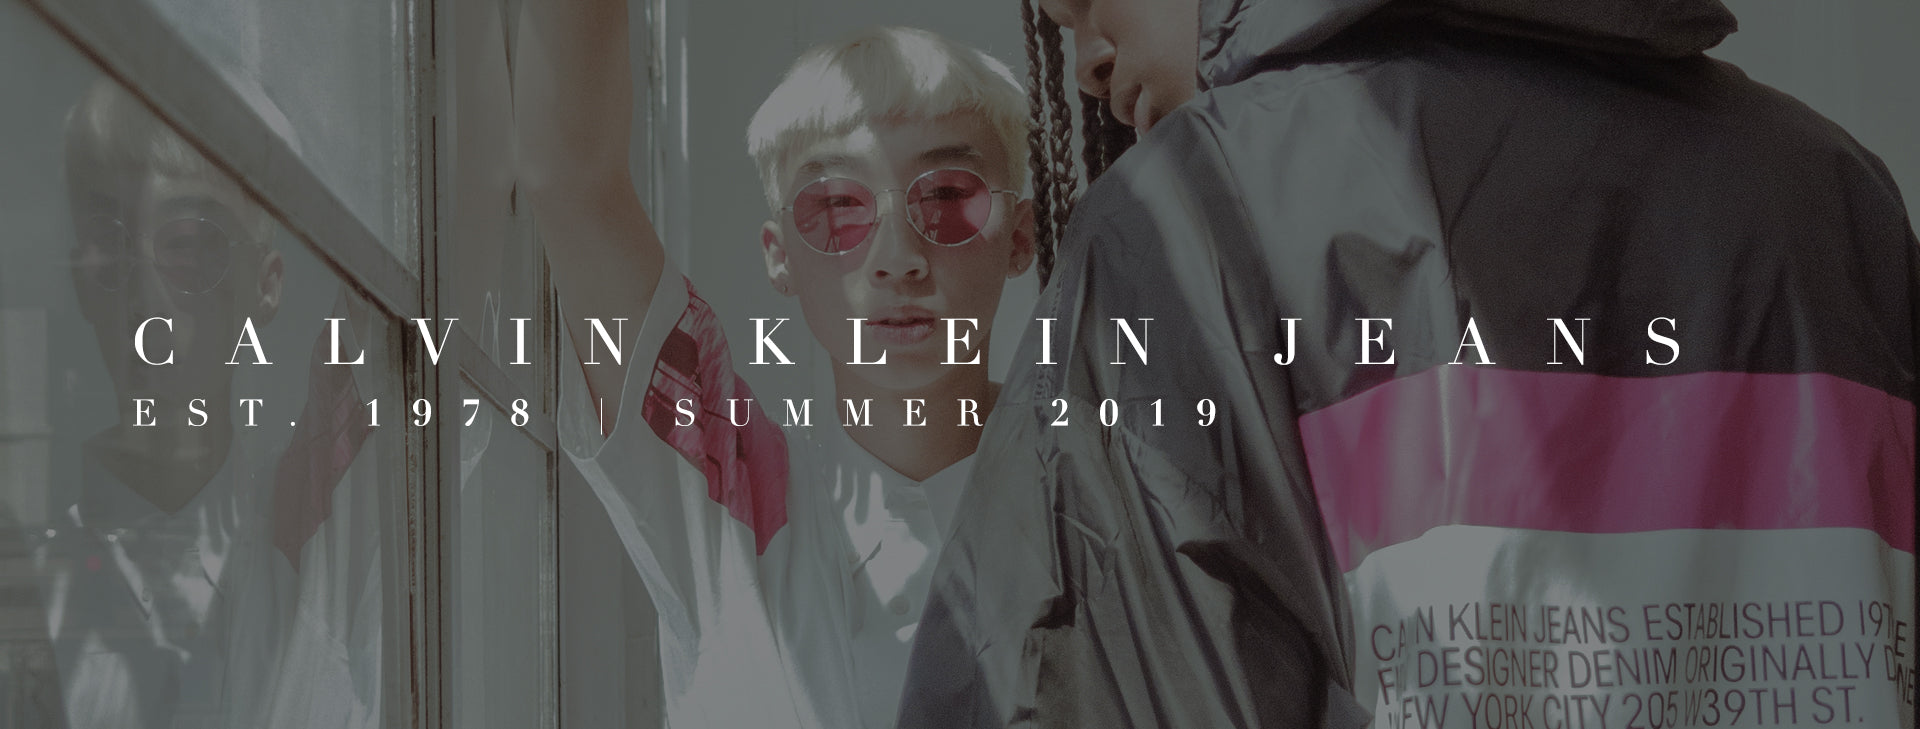 Calvin Klein Jeans Est. 1978 Summer 2019